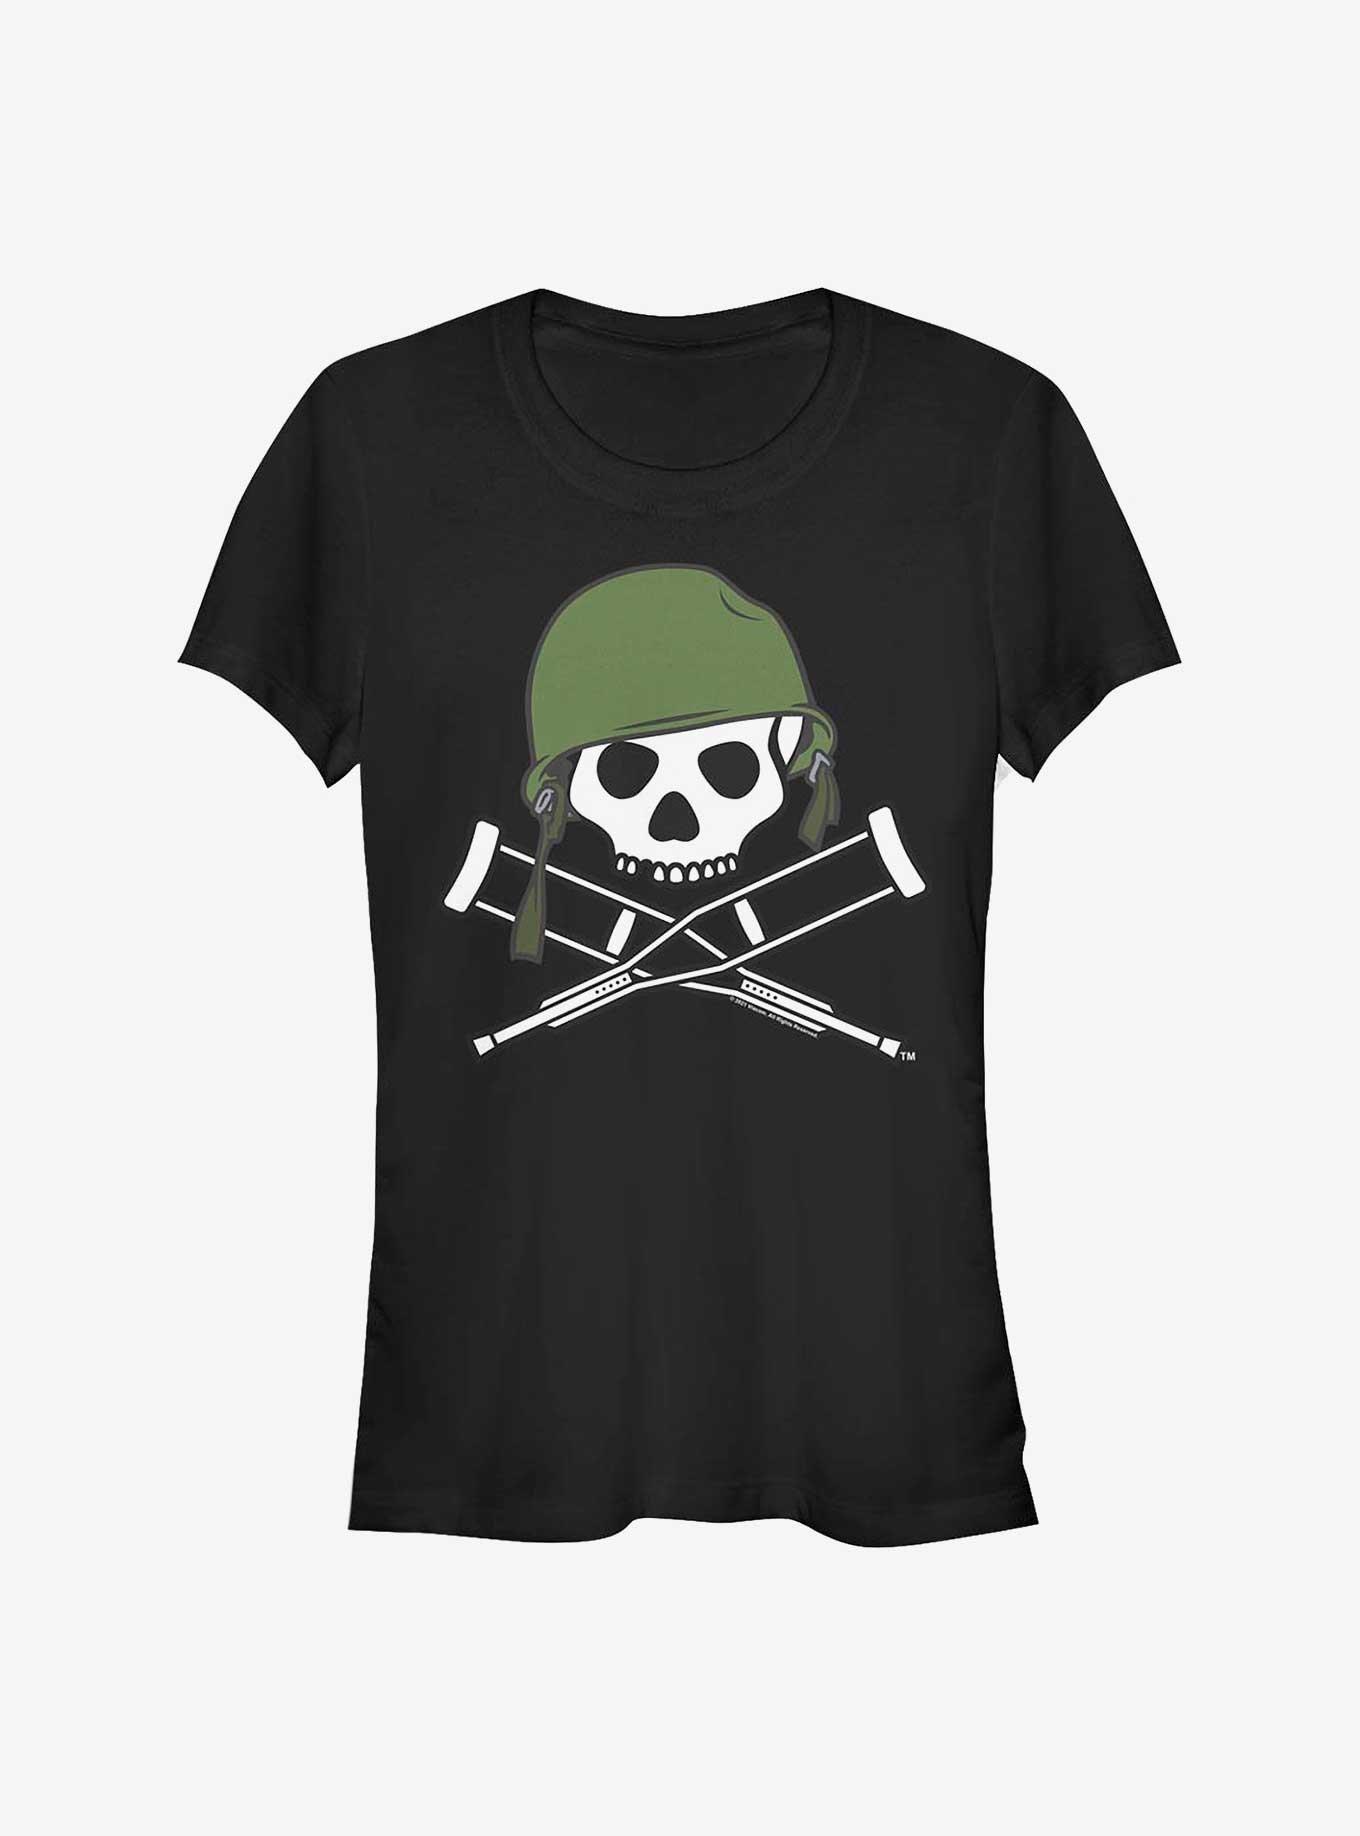 Jackass Forever Military Logo Girls T-Shirt